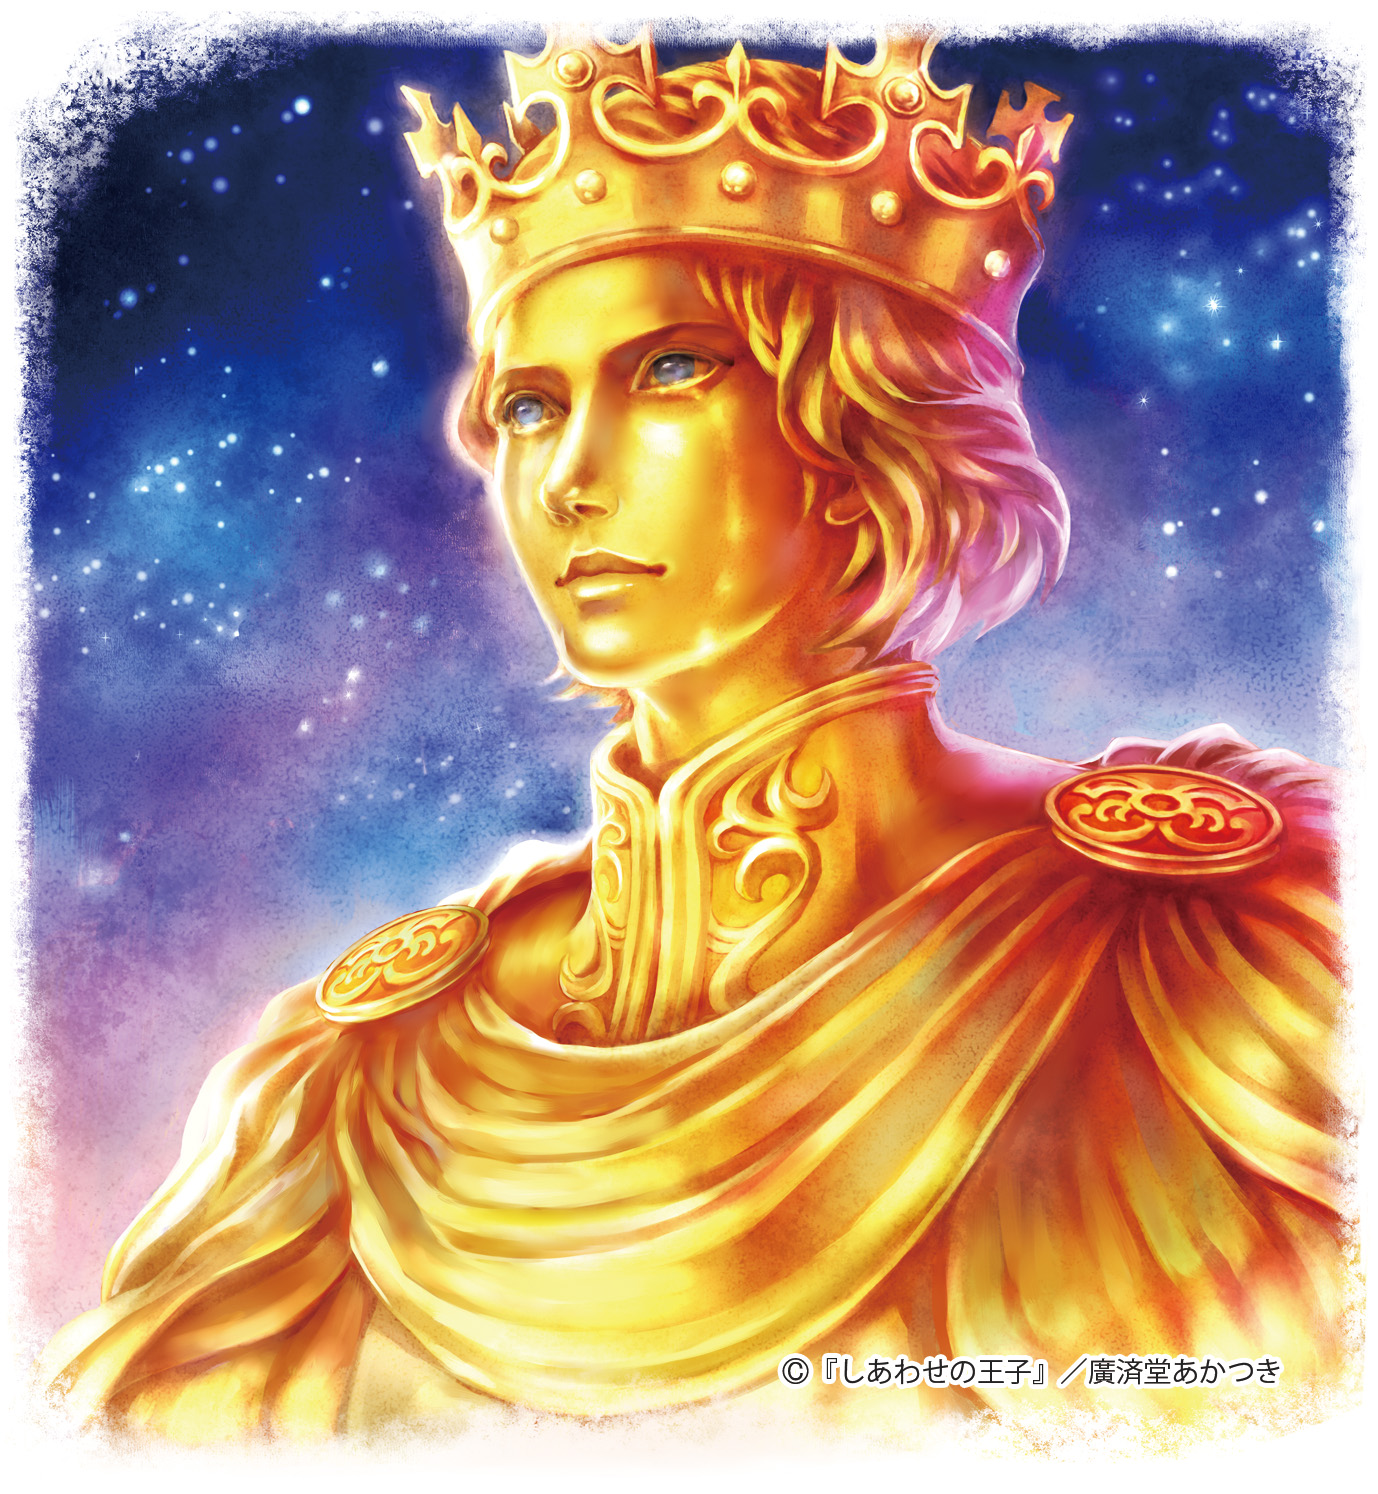 『しあわせの王子』涙を流す金色の王子の像